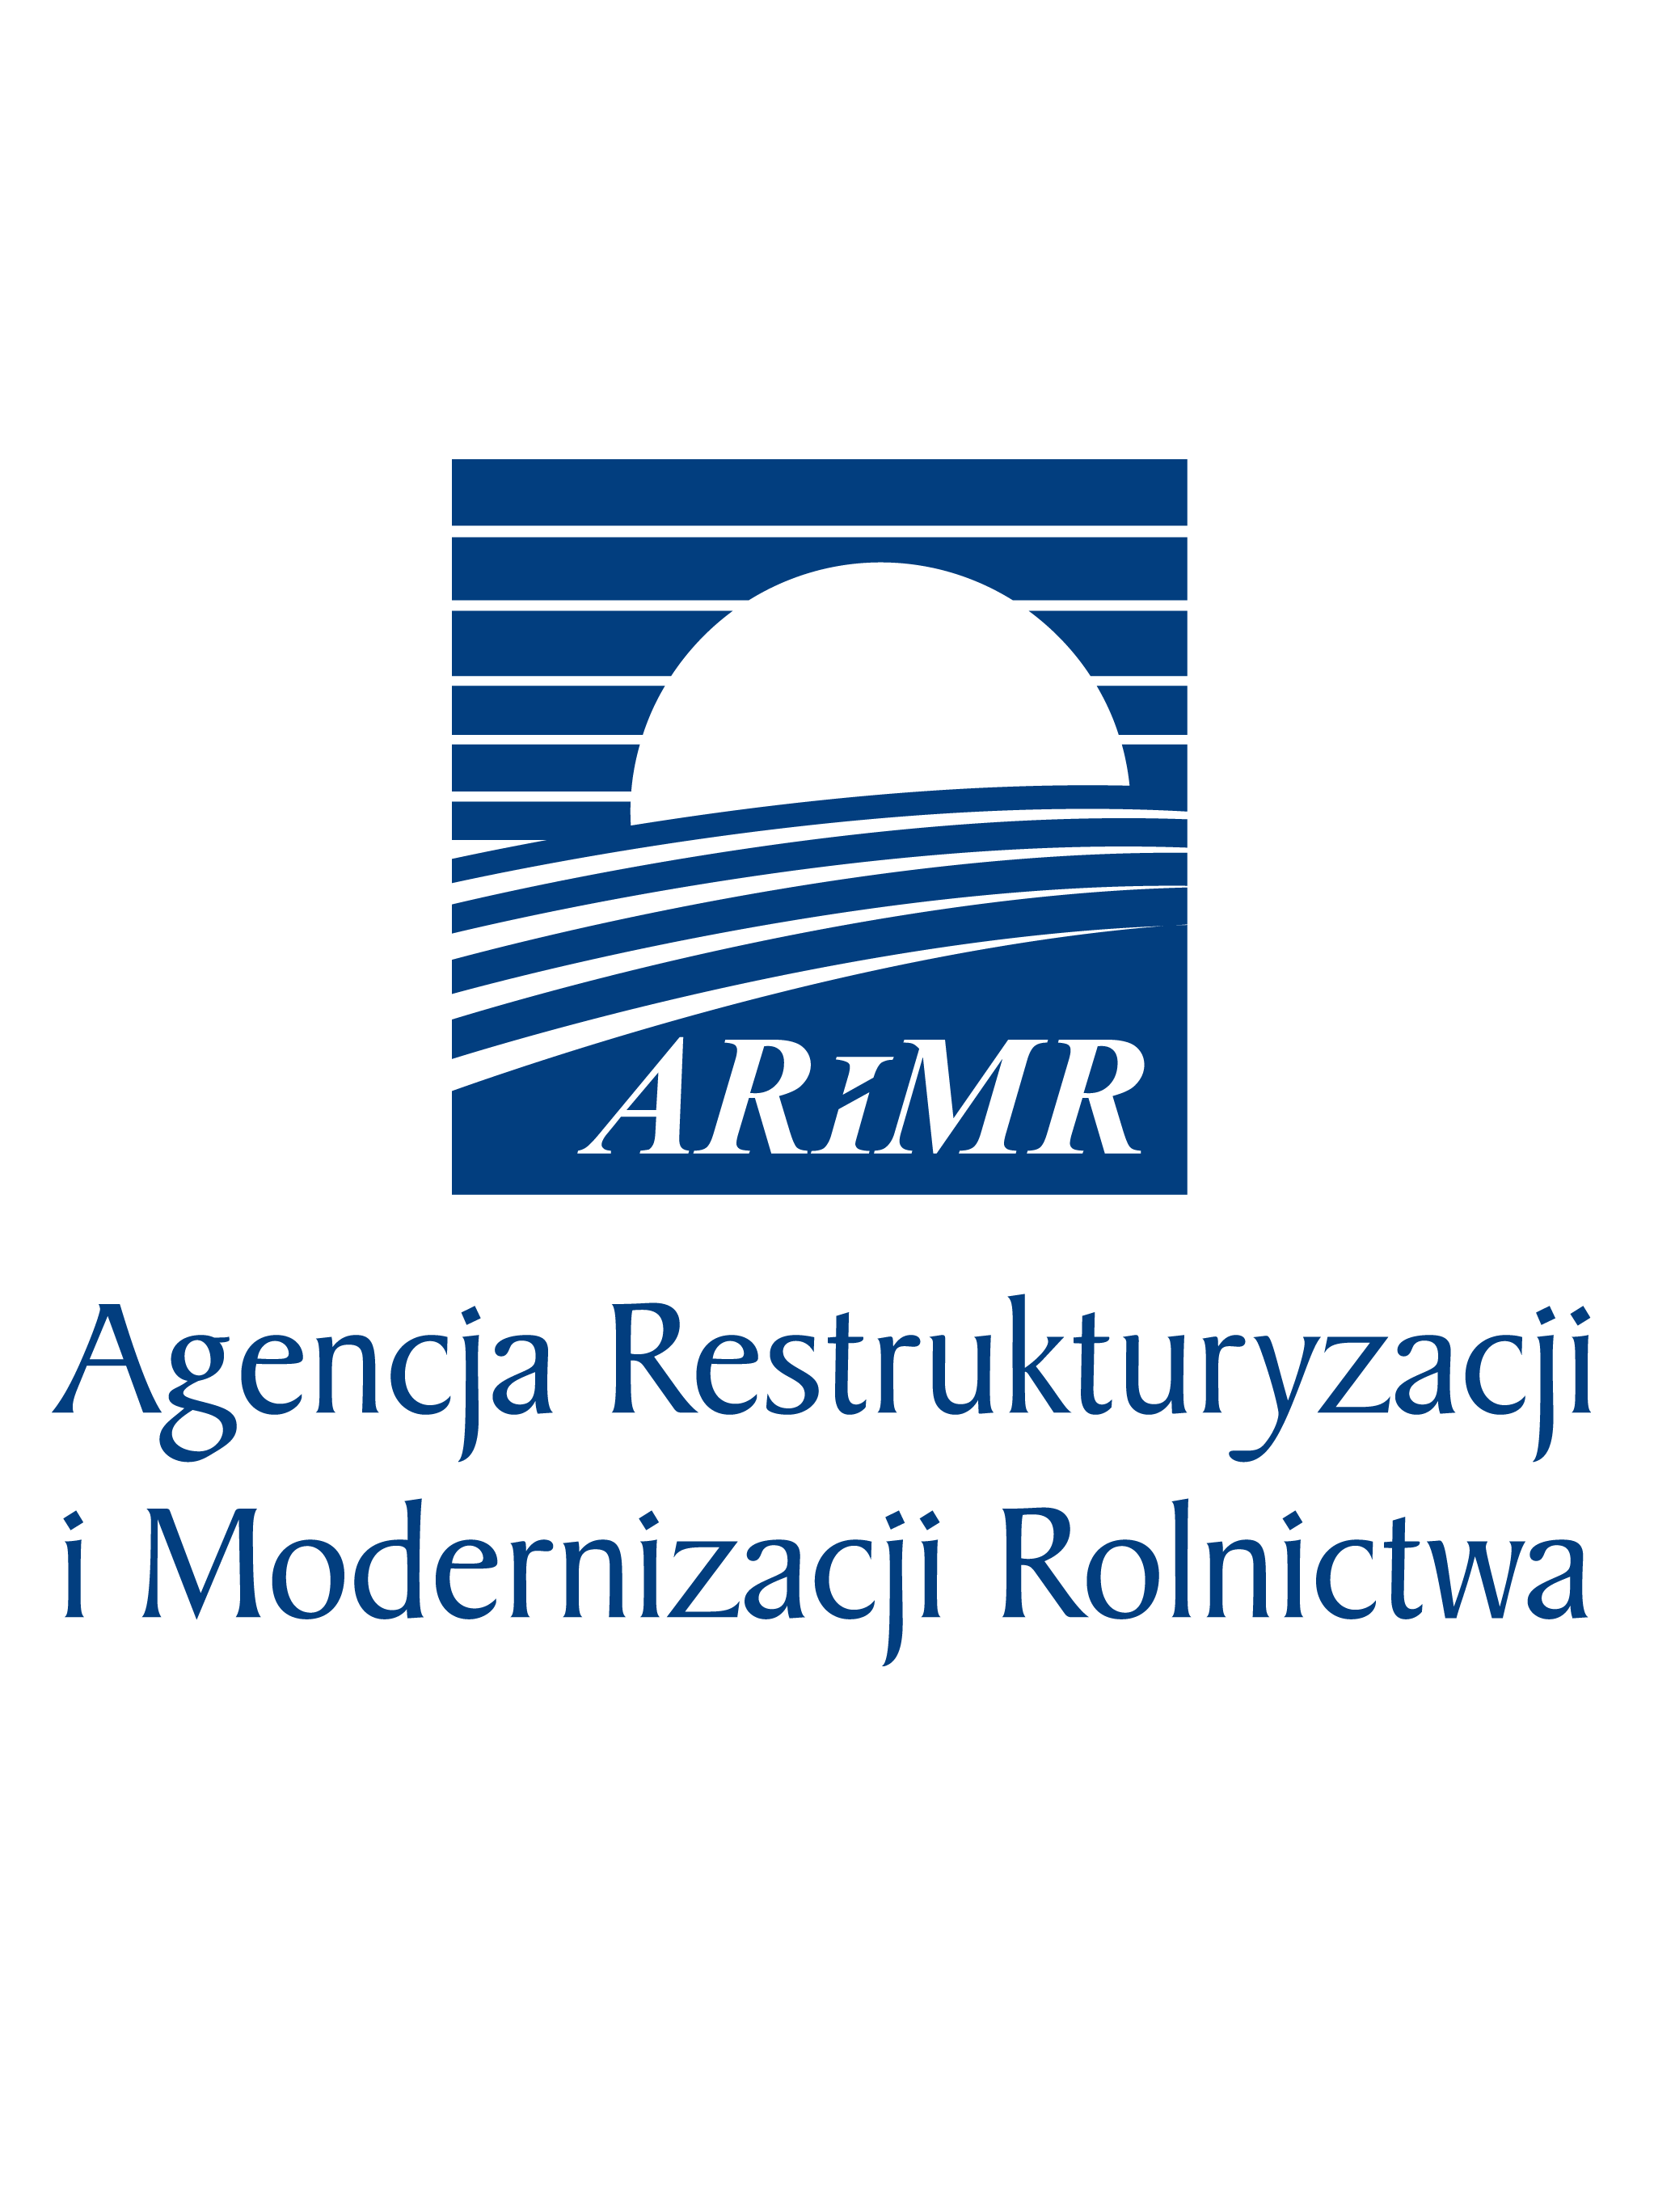 Od 25 maja obsługa beneficjentów w placówkach ARiMR w pełnym zakresie